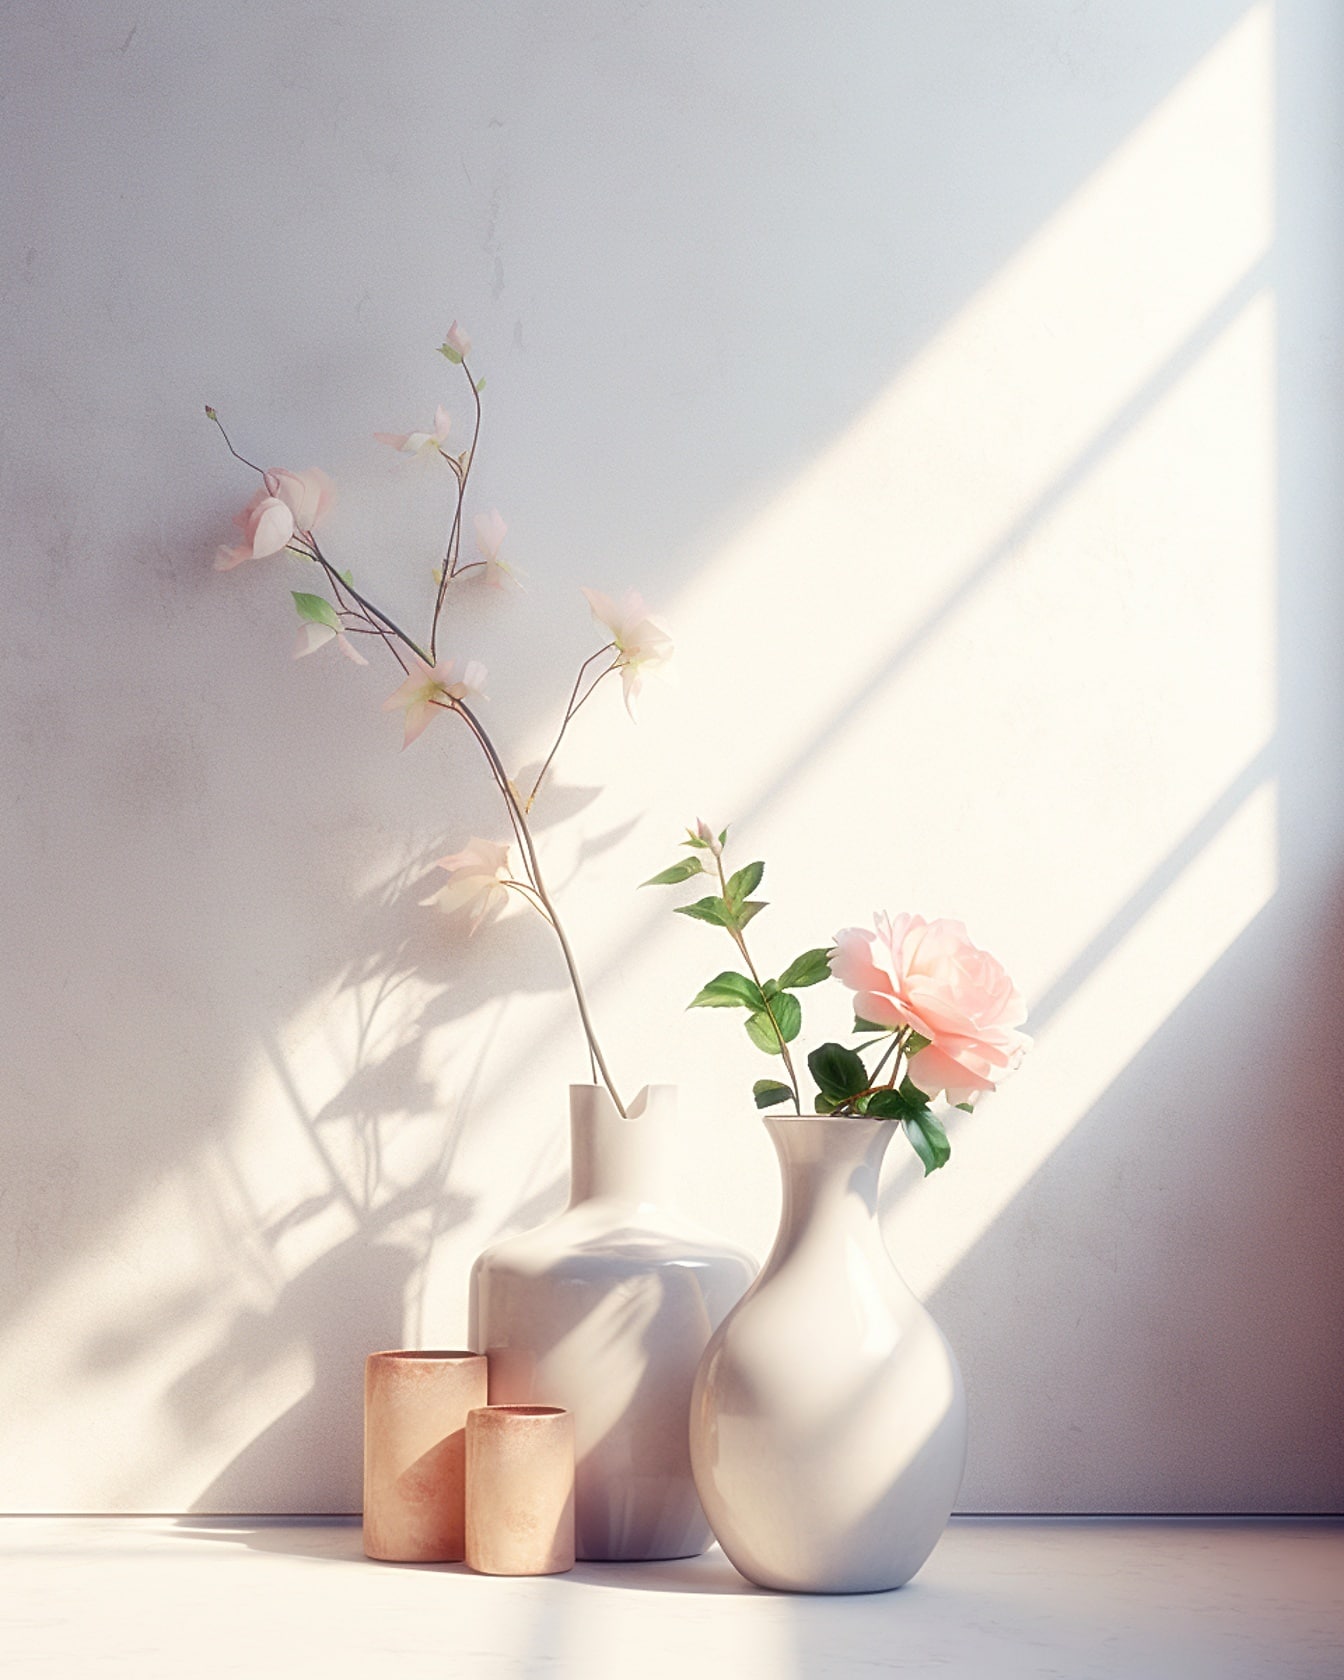 Δύο πορσελάνινα λευκά βάζα με λευκά τριαντάφυλλα σε αυτό σε ένα τραπέζι σε απαλό φως